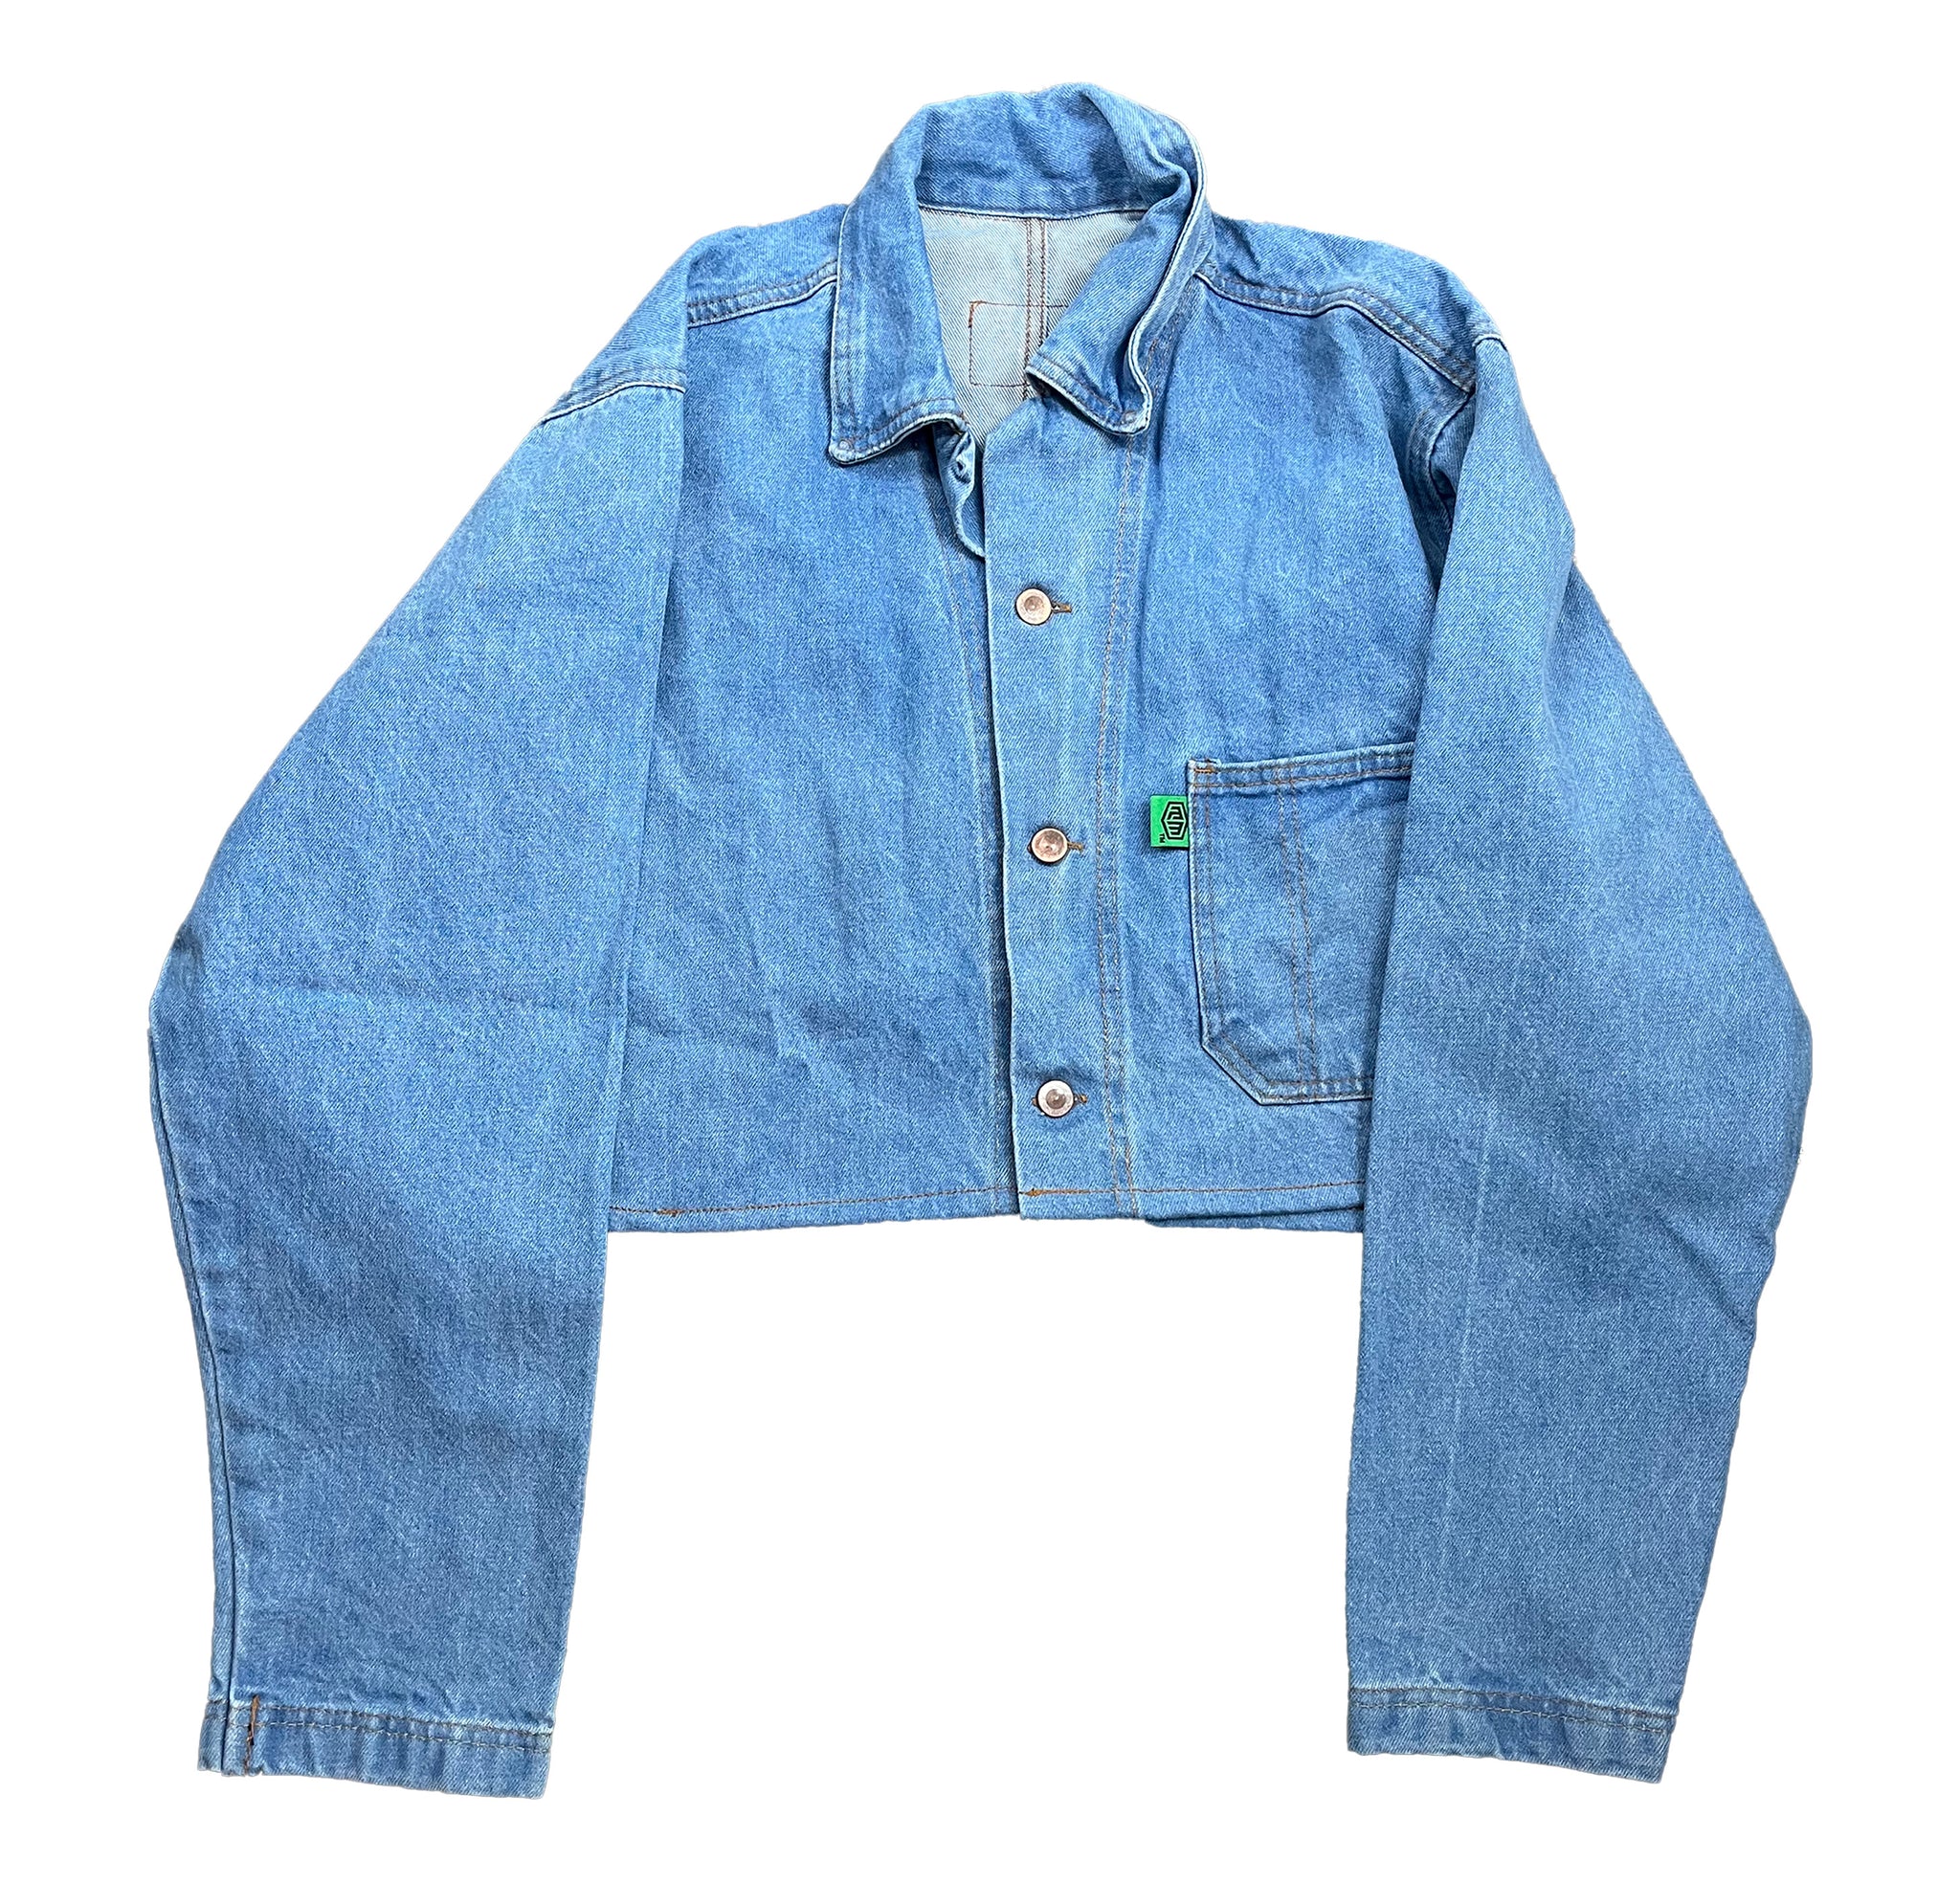 Basic denim jacket - cropped (bright blue)